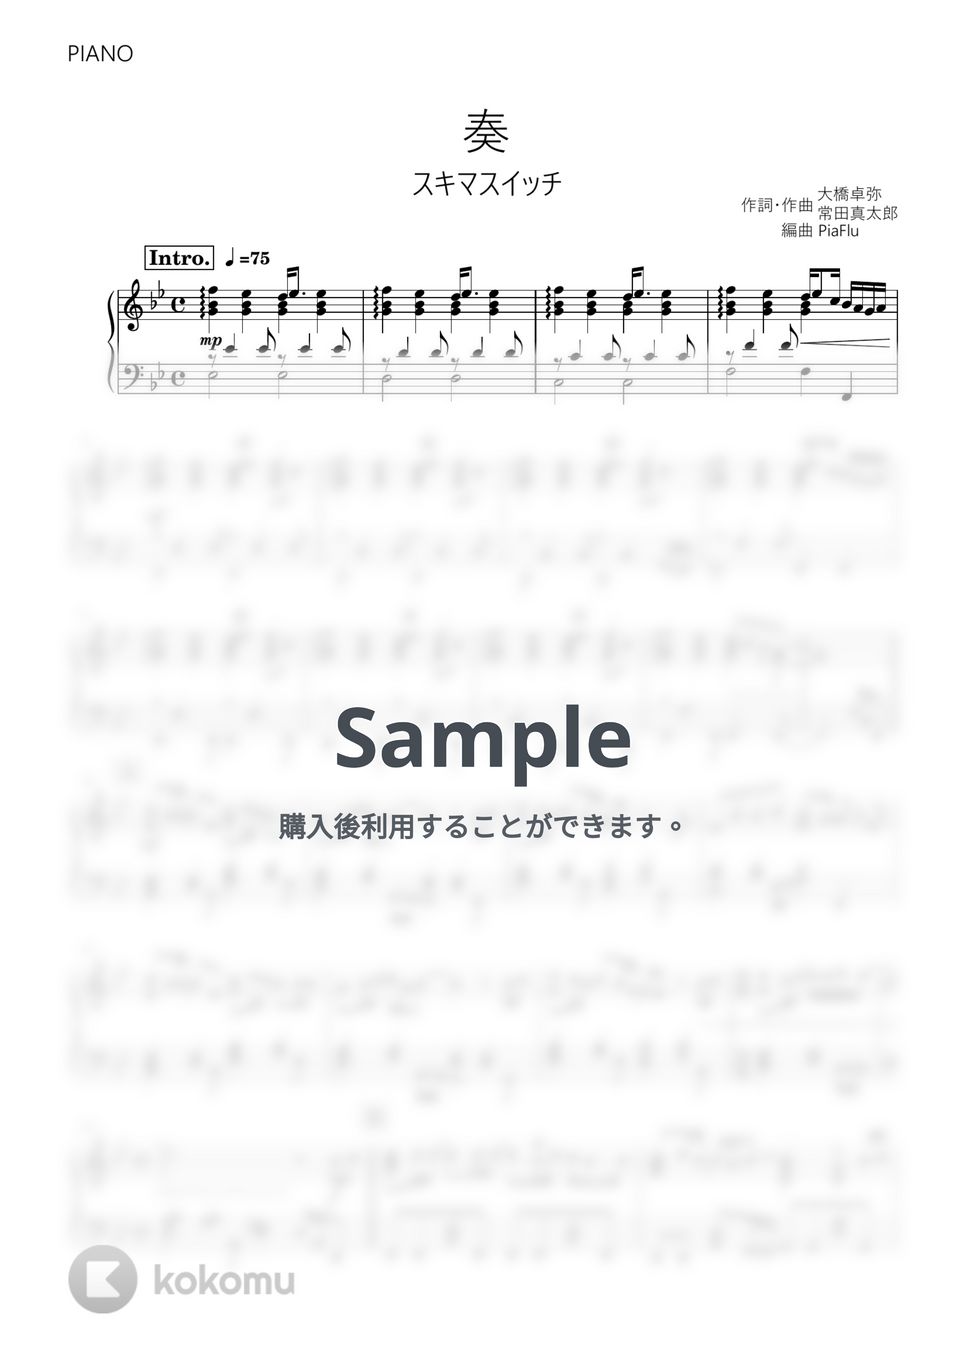 スキマスイッチ - 奏 (ピアノ) by PiaFlu